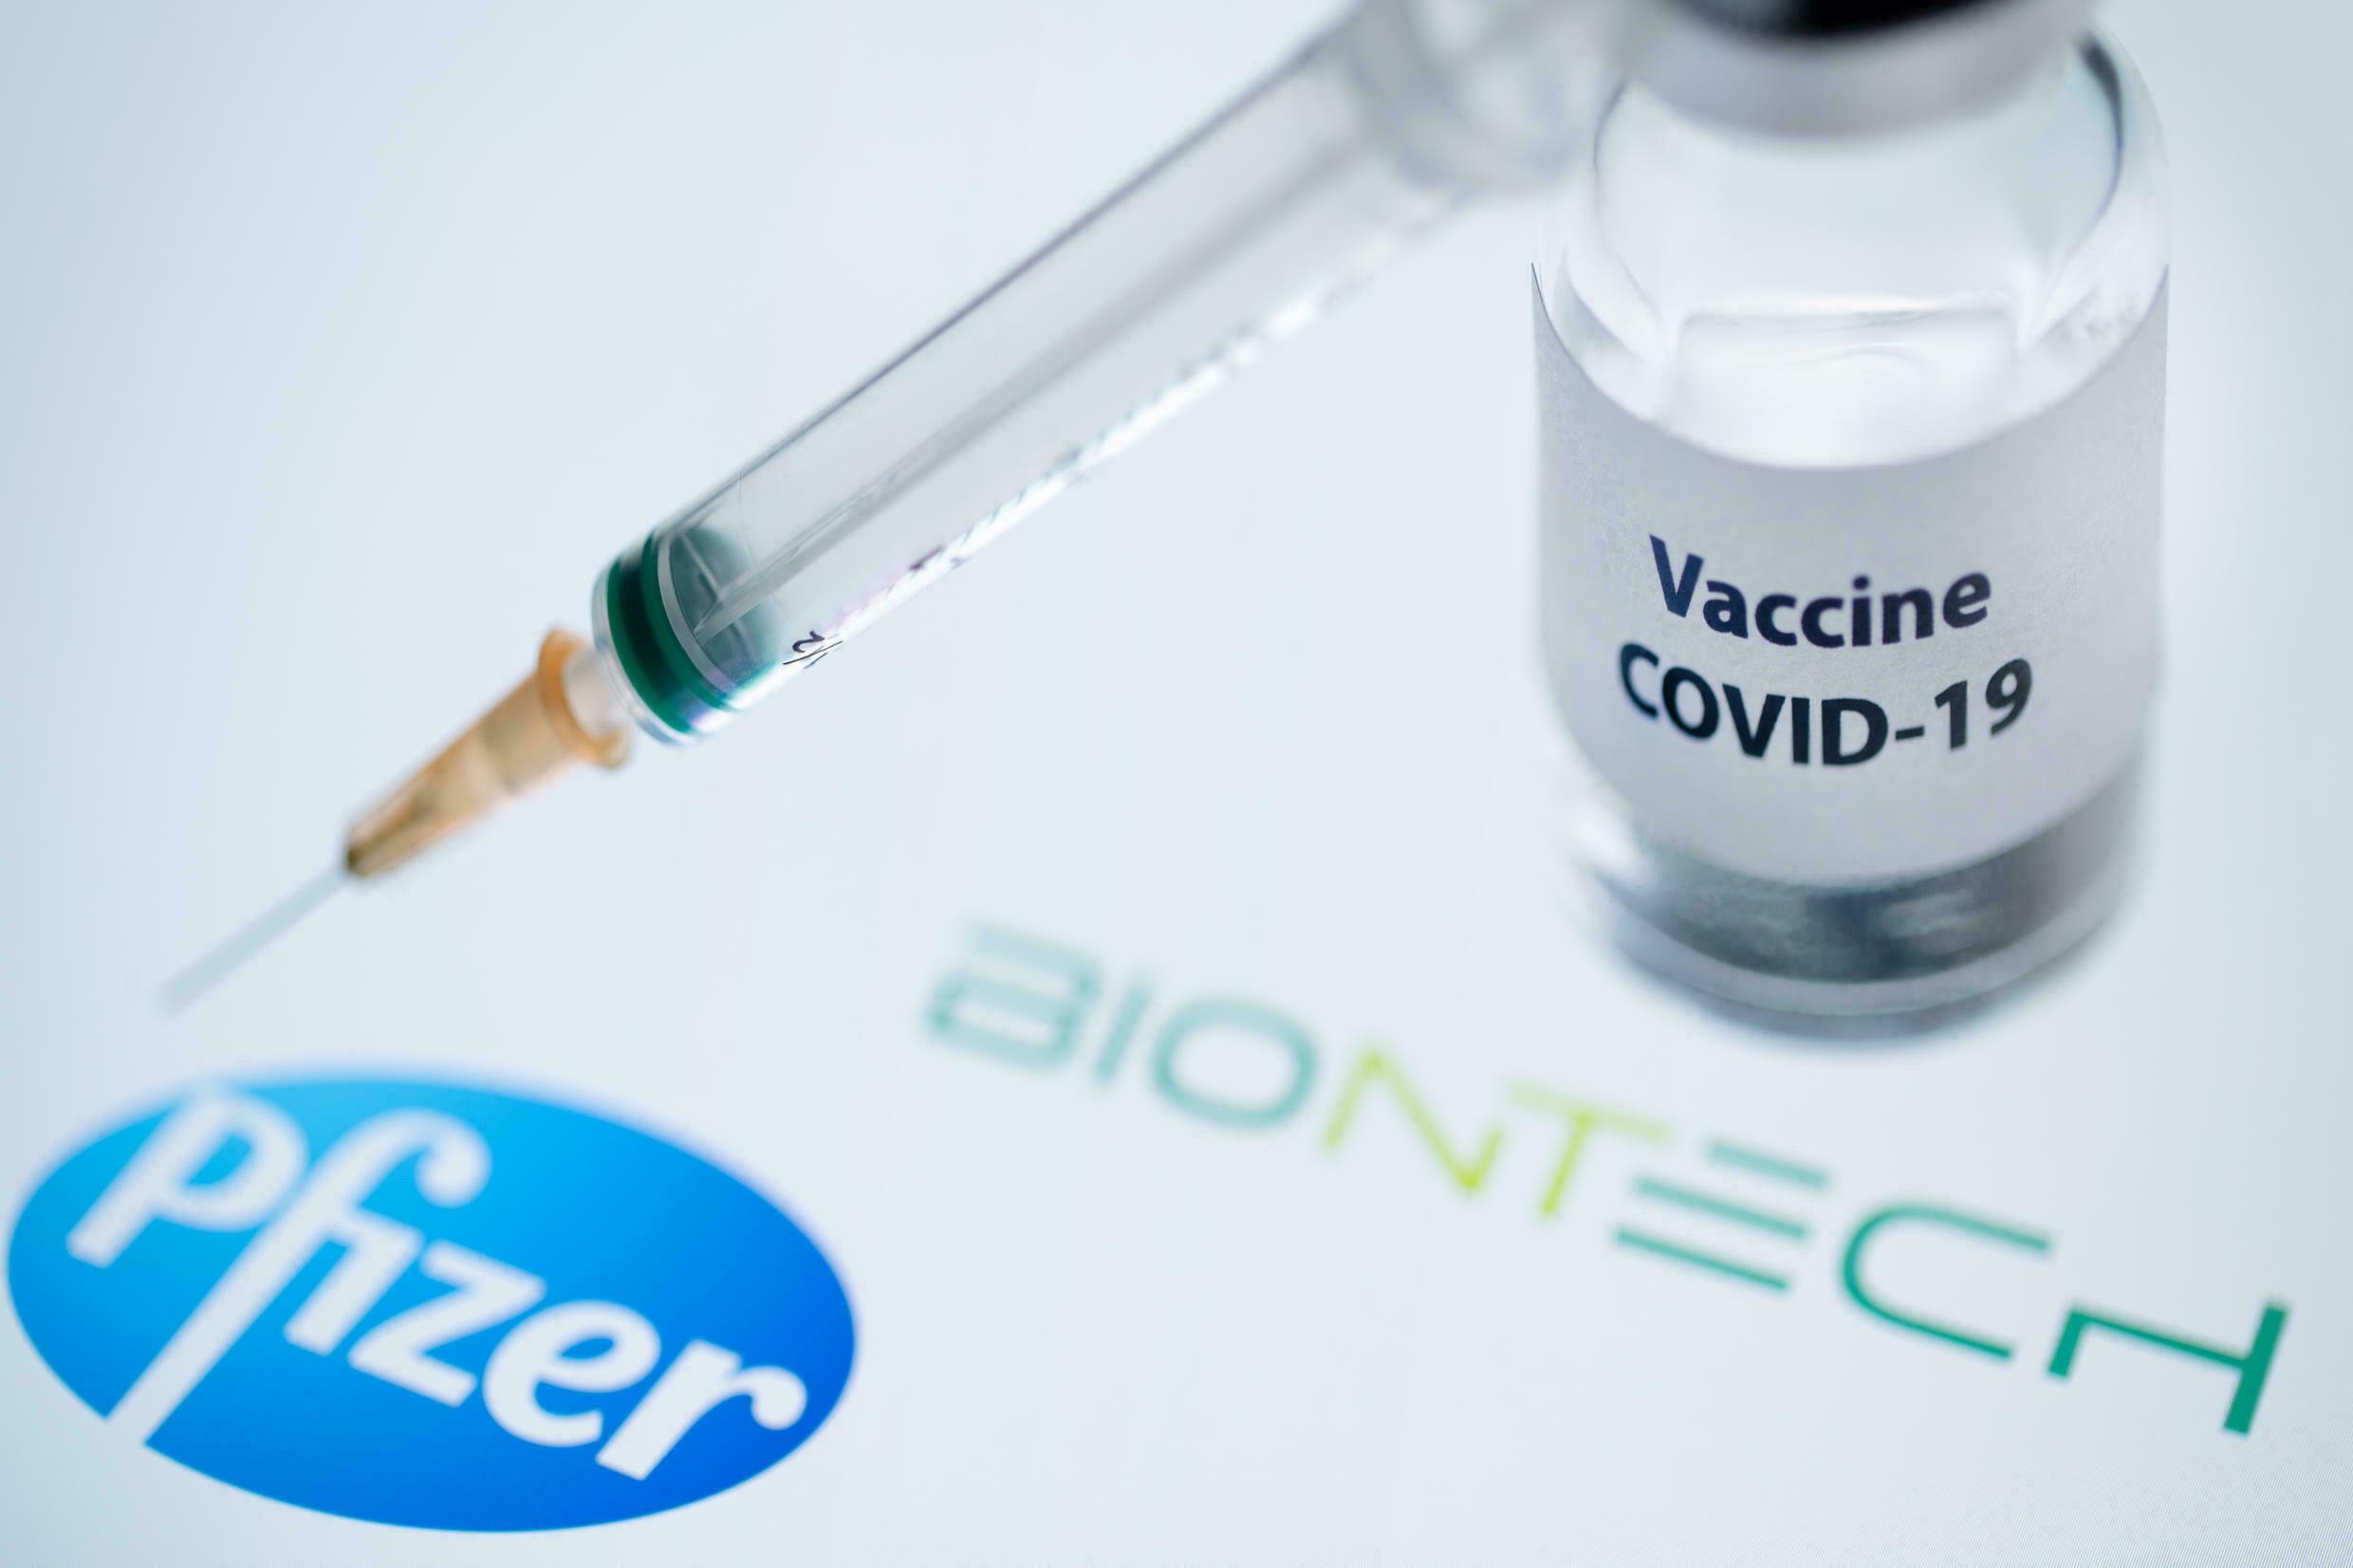 شركة فايزر تؤكد: اللقاح "لا يزال فعّالًا" ضد أوميكرون بعد "ثلاث جرعات"